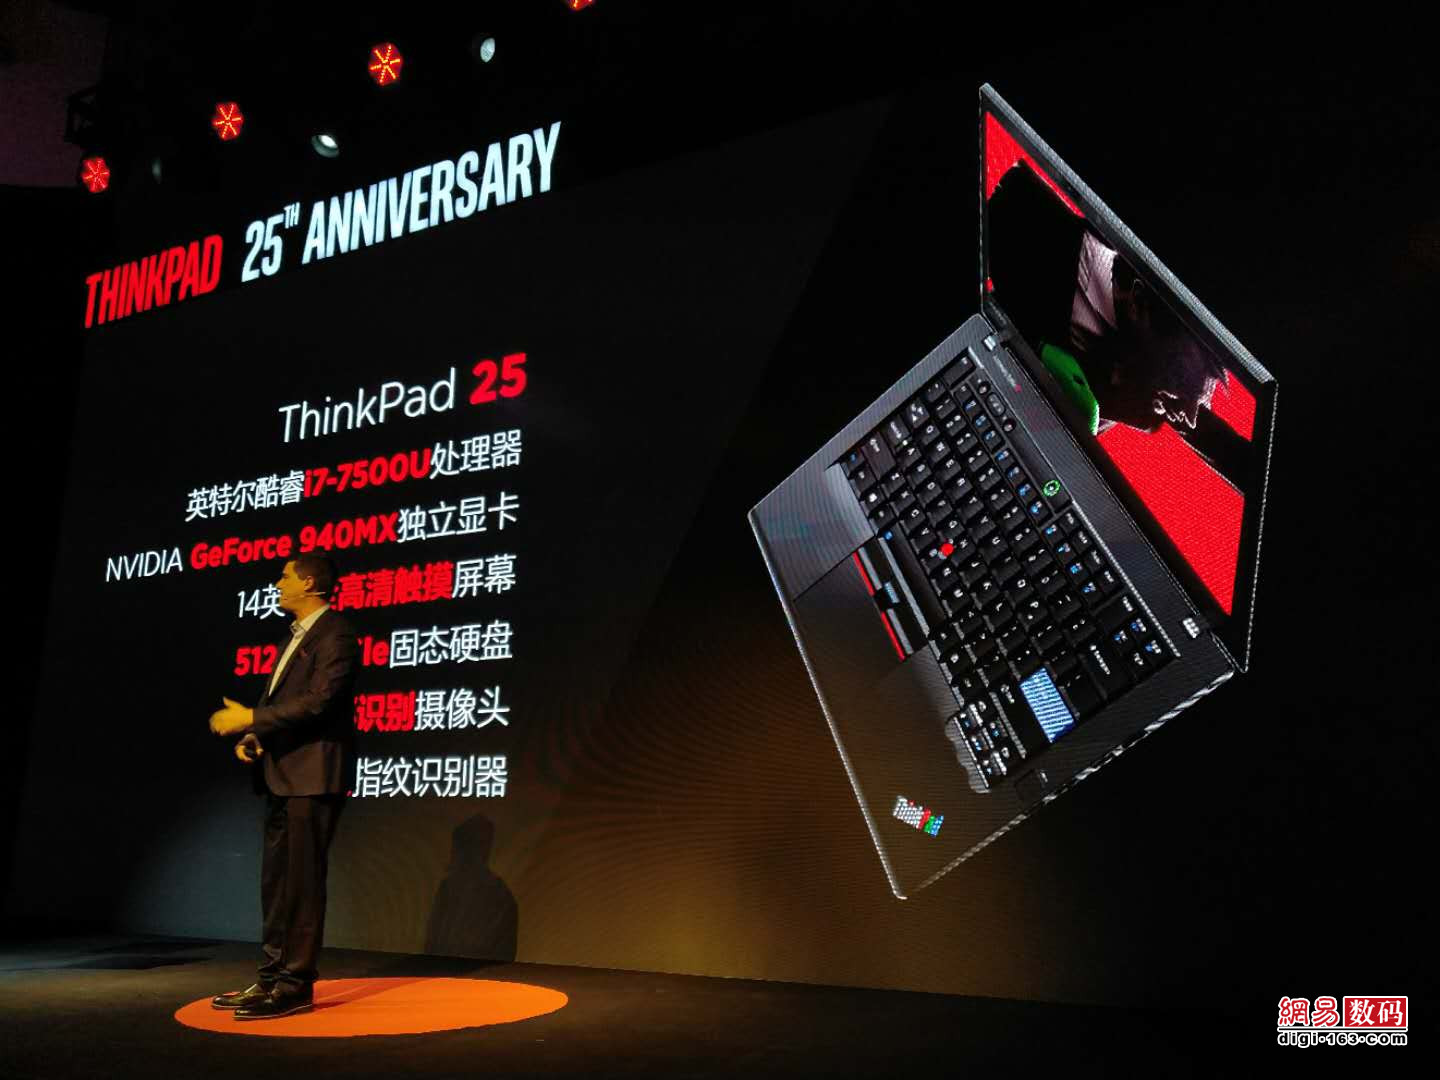 12999元限量1000台 ThinkPad 25周年版发布